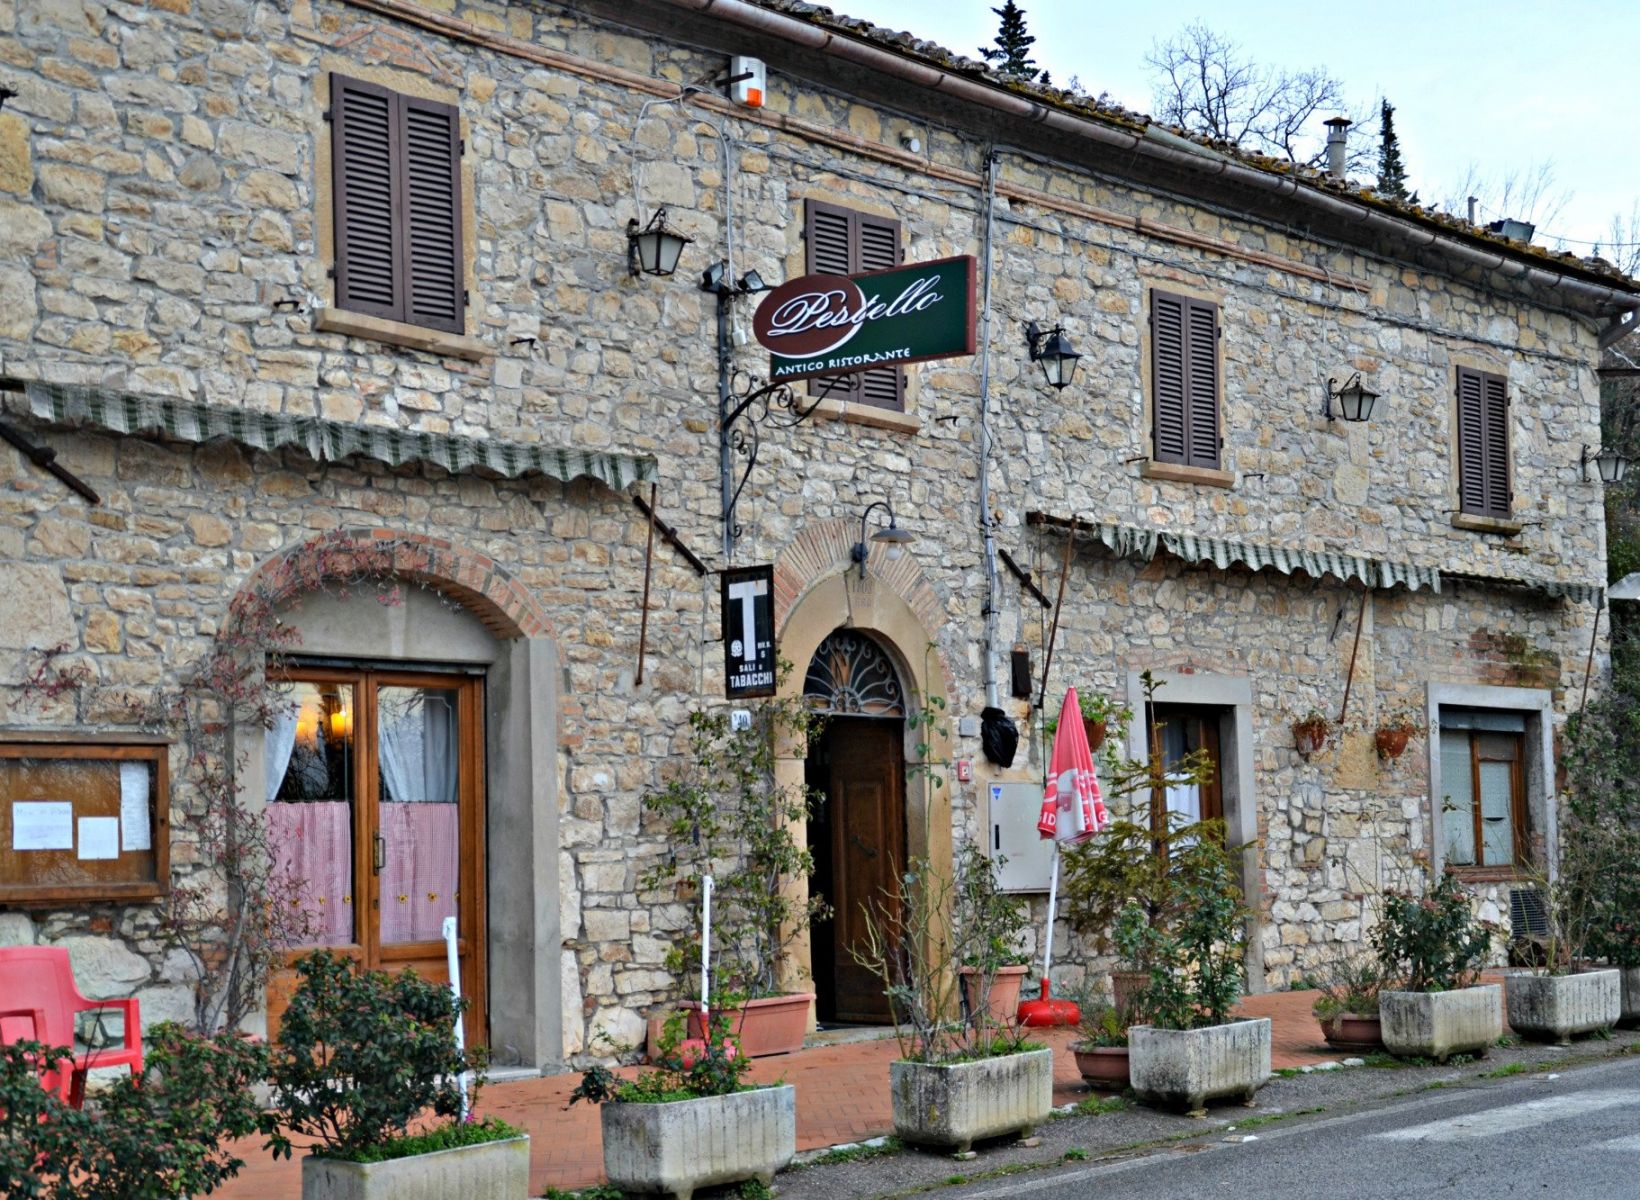 Ristorante Castellina in Chianti - Bistecca Fiorentina - Ribollita - Antipasti toscani - Pasta fatta in casa